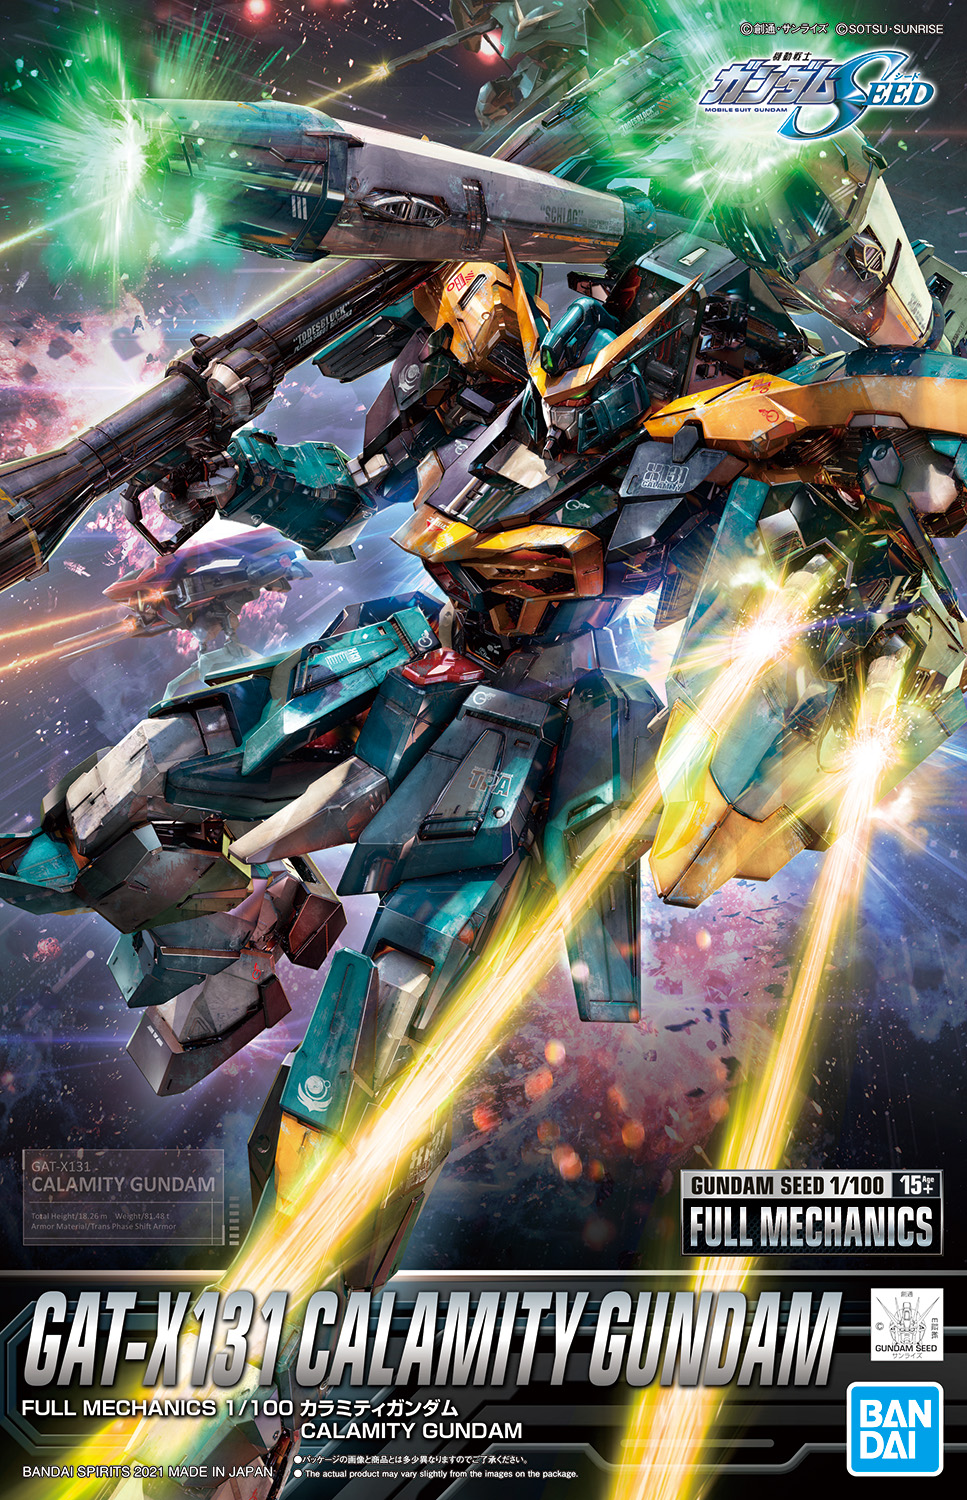 Full Mechanics, The Gundam Wiki